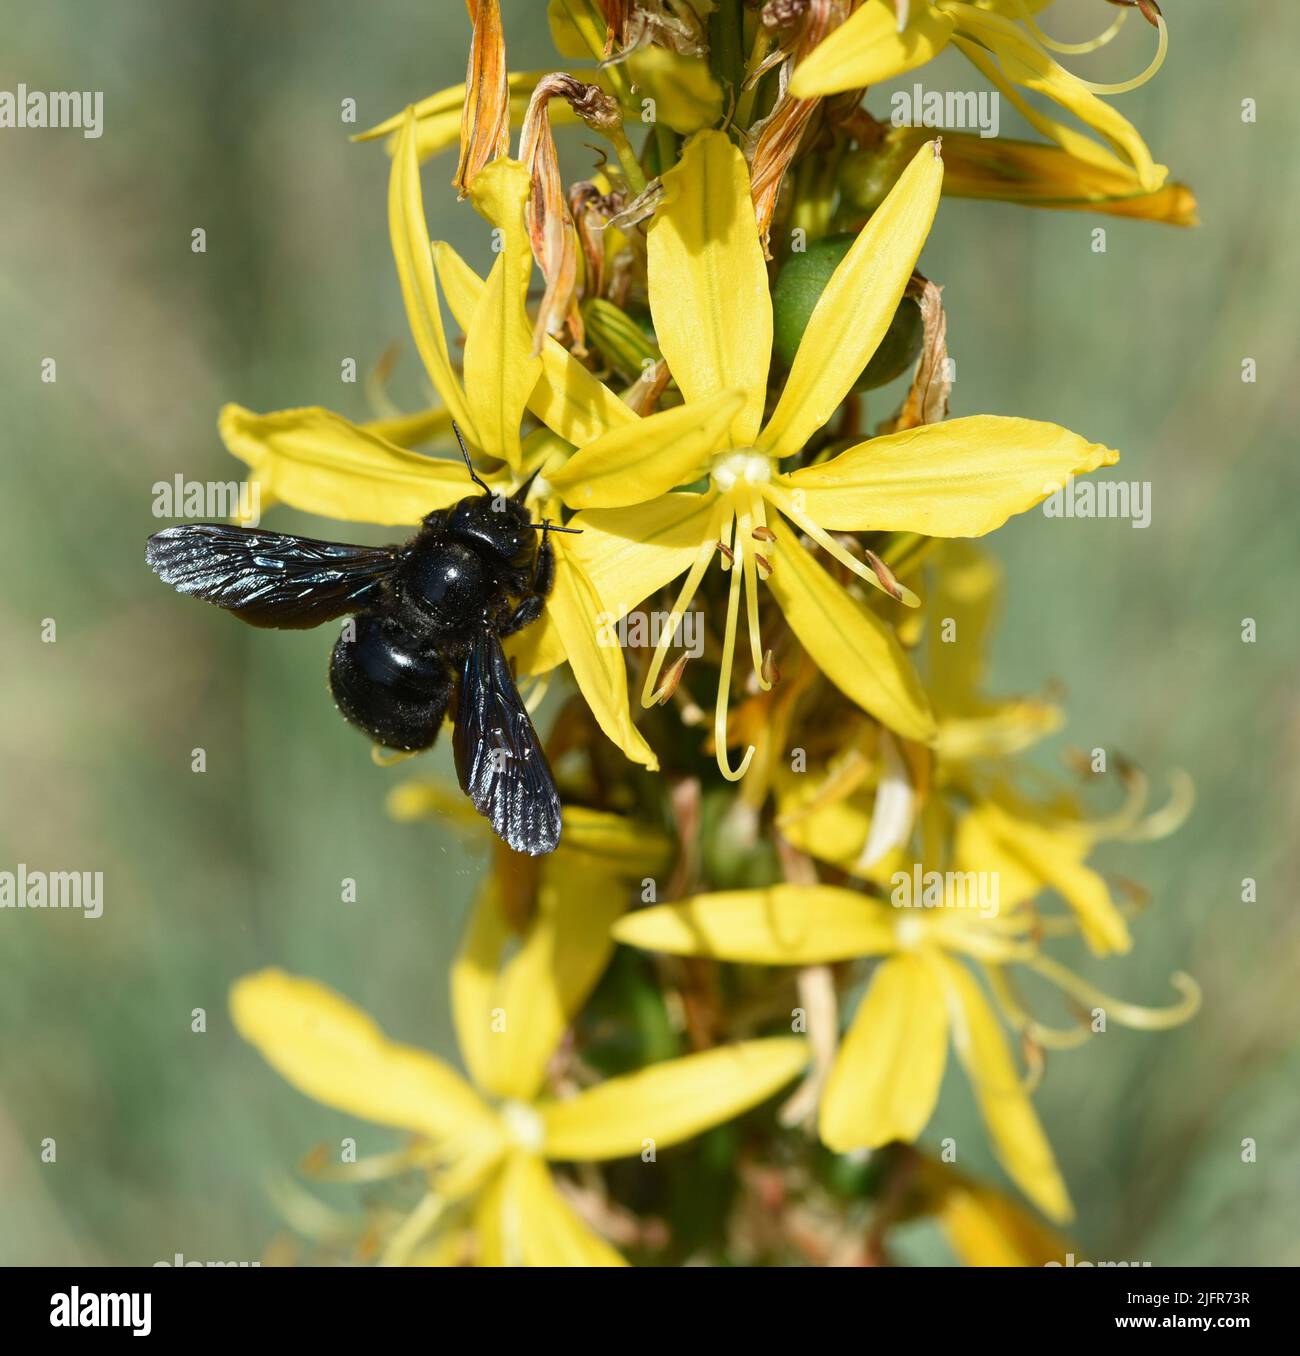 Der Gelbe Affodill, frueher auch Goldwurz genannt, ist eine Pflanzenart aus der Gattung der Junkerlilien. The yellow asphodel, formerly also called go Stock Photo